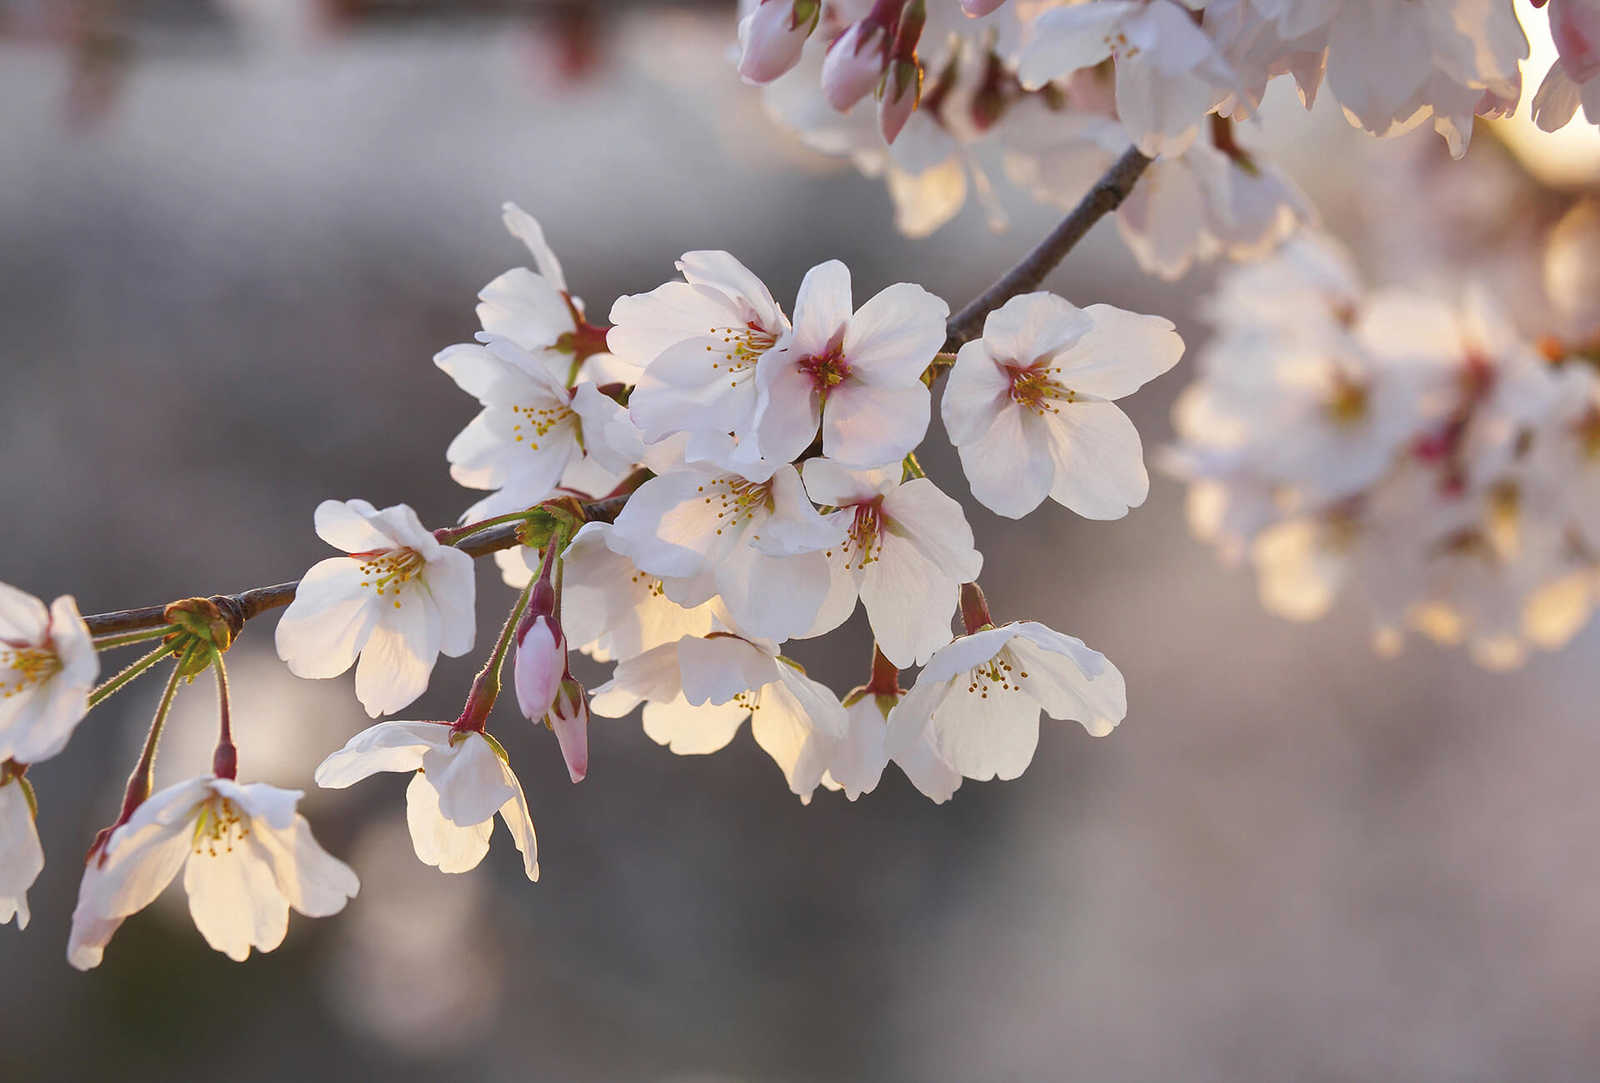         Fototapete Kirschblüten – Weiß, Rosa, Braun
    